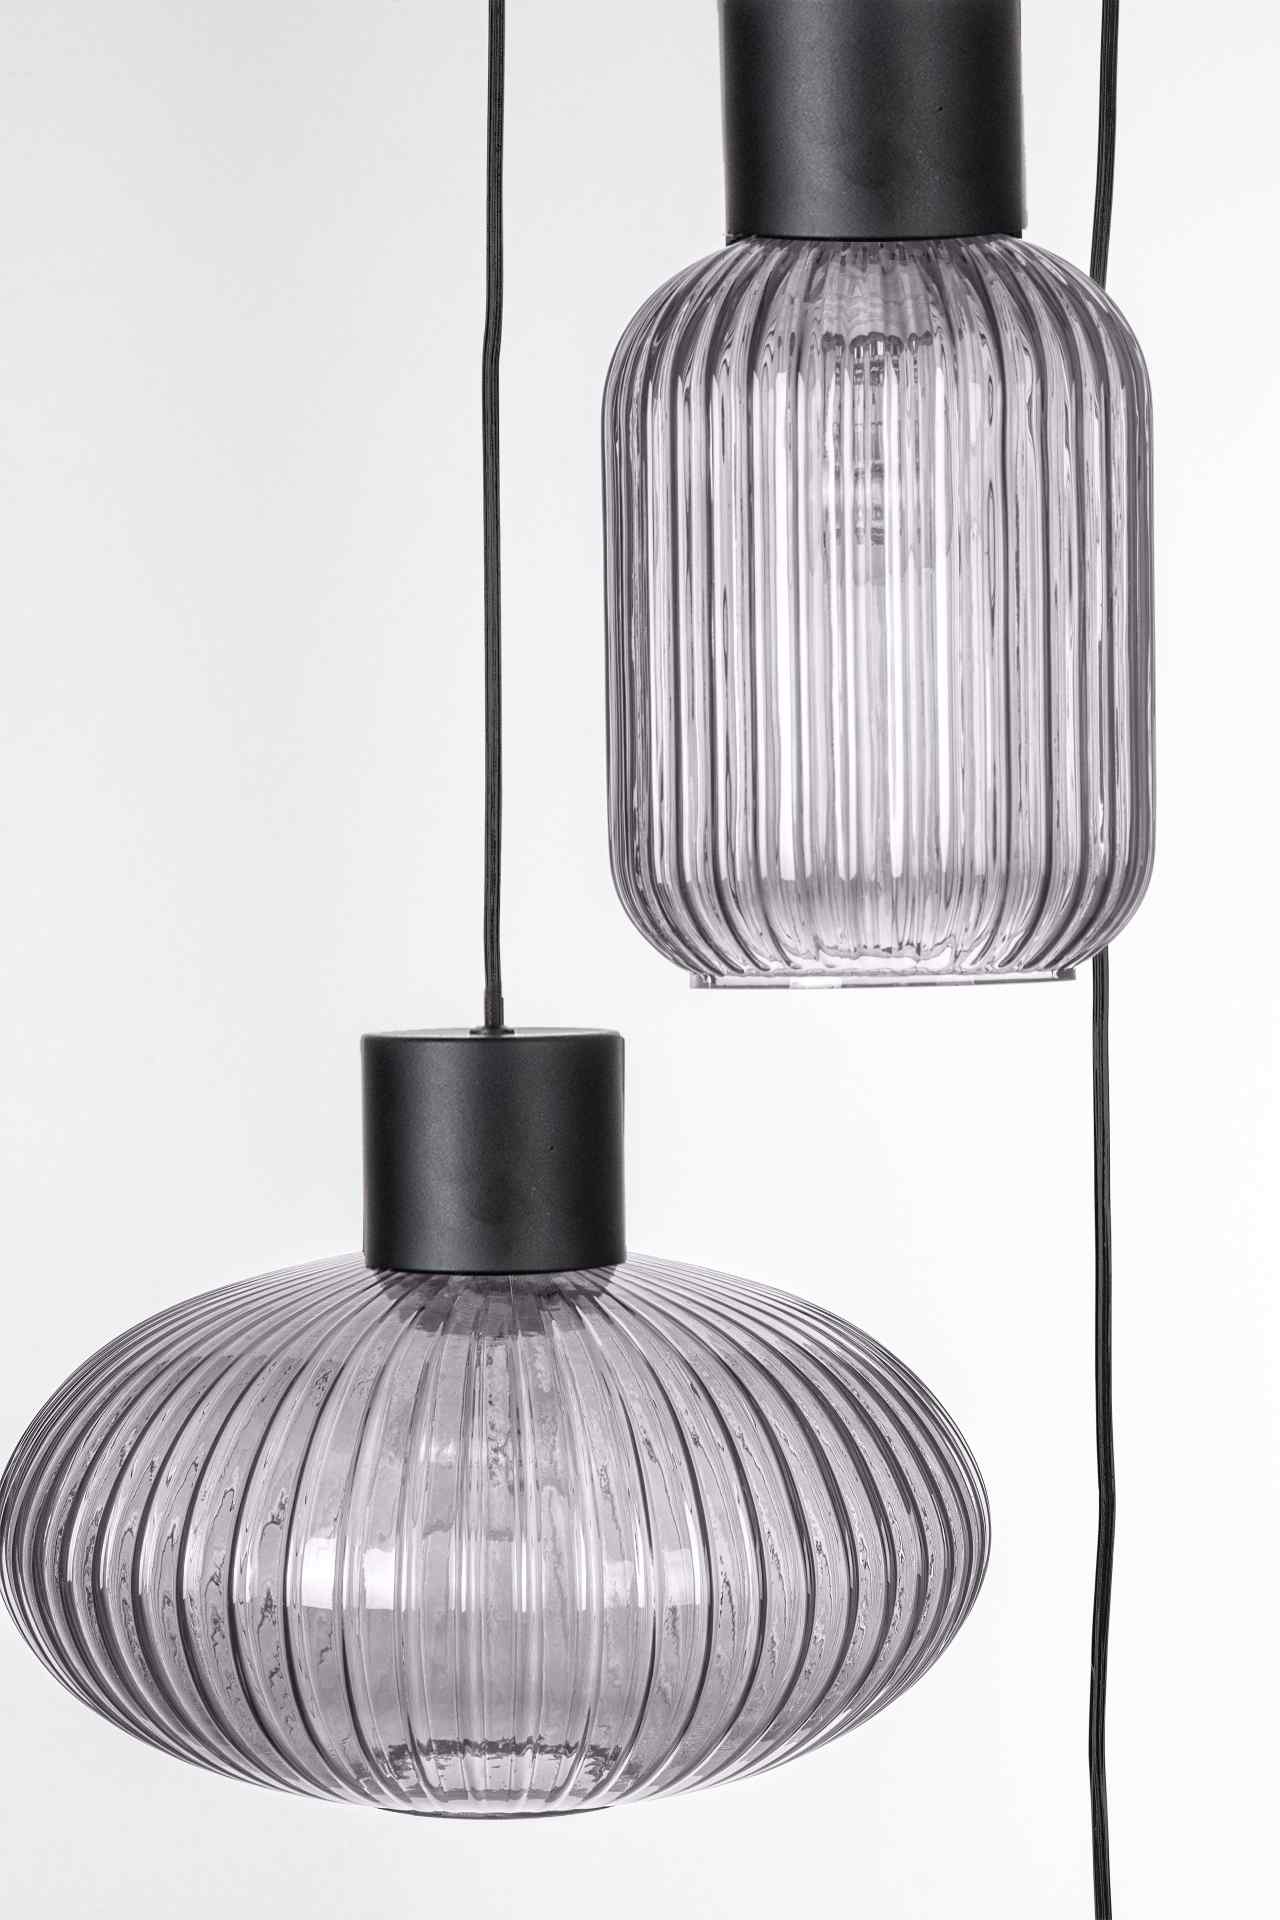 Die Hängeleuchte Showy überzeugt mit ihrem modernen Design. Gefertigt wurde sie aus Metall, welches einen schwarzen Farbton besitzt. Die Lampenschirme sind aus Glas und sind abgedunkelt. Die Lampe besitzt eine Höhe von 150 cm.